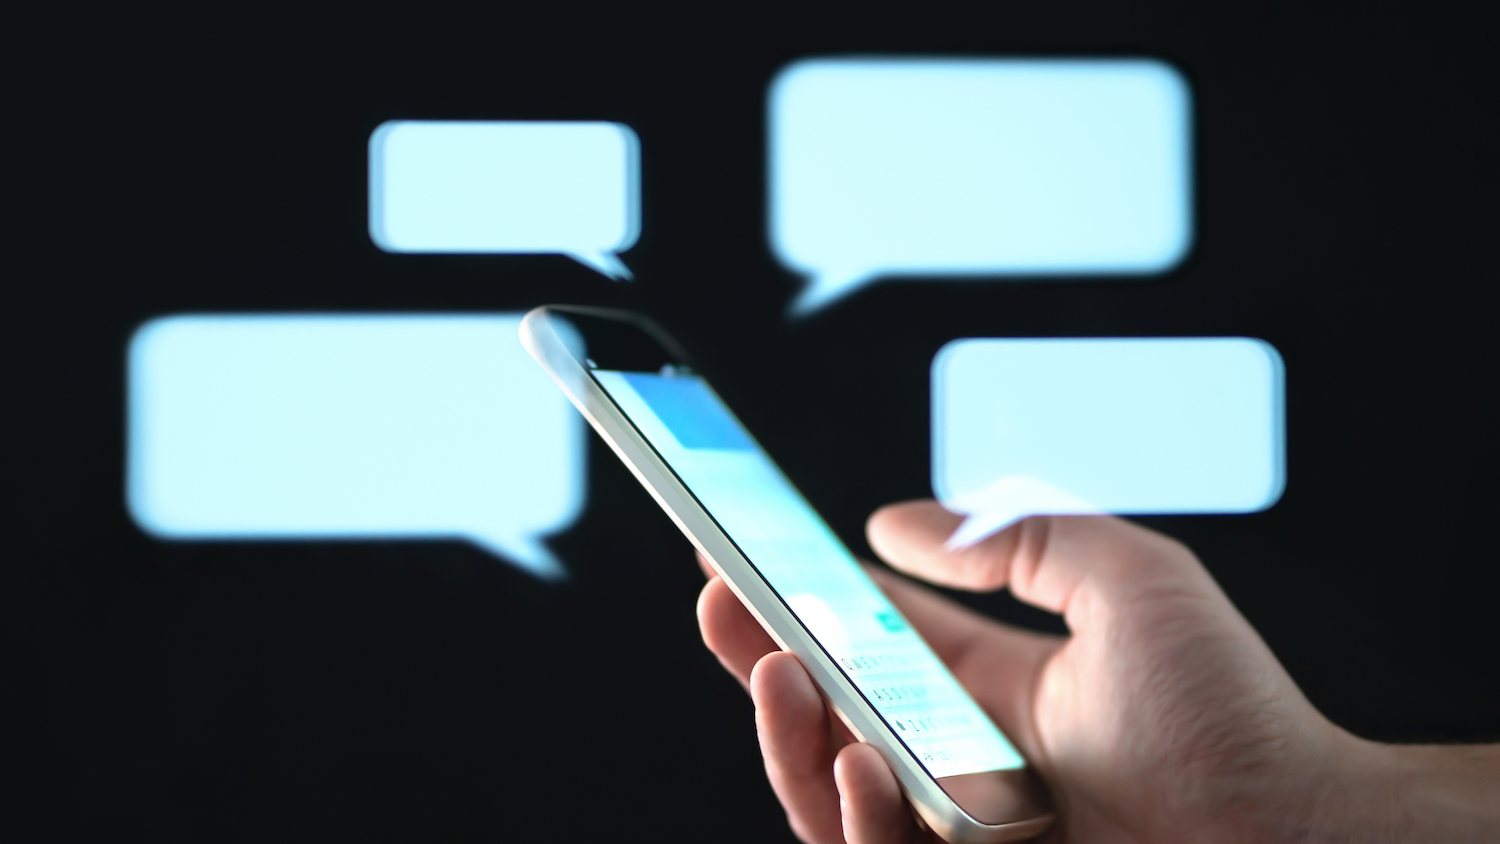 Consumer messaging apps